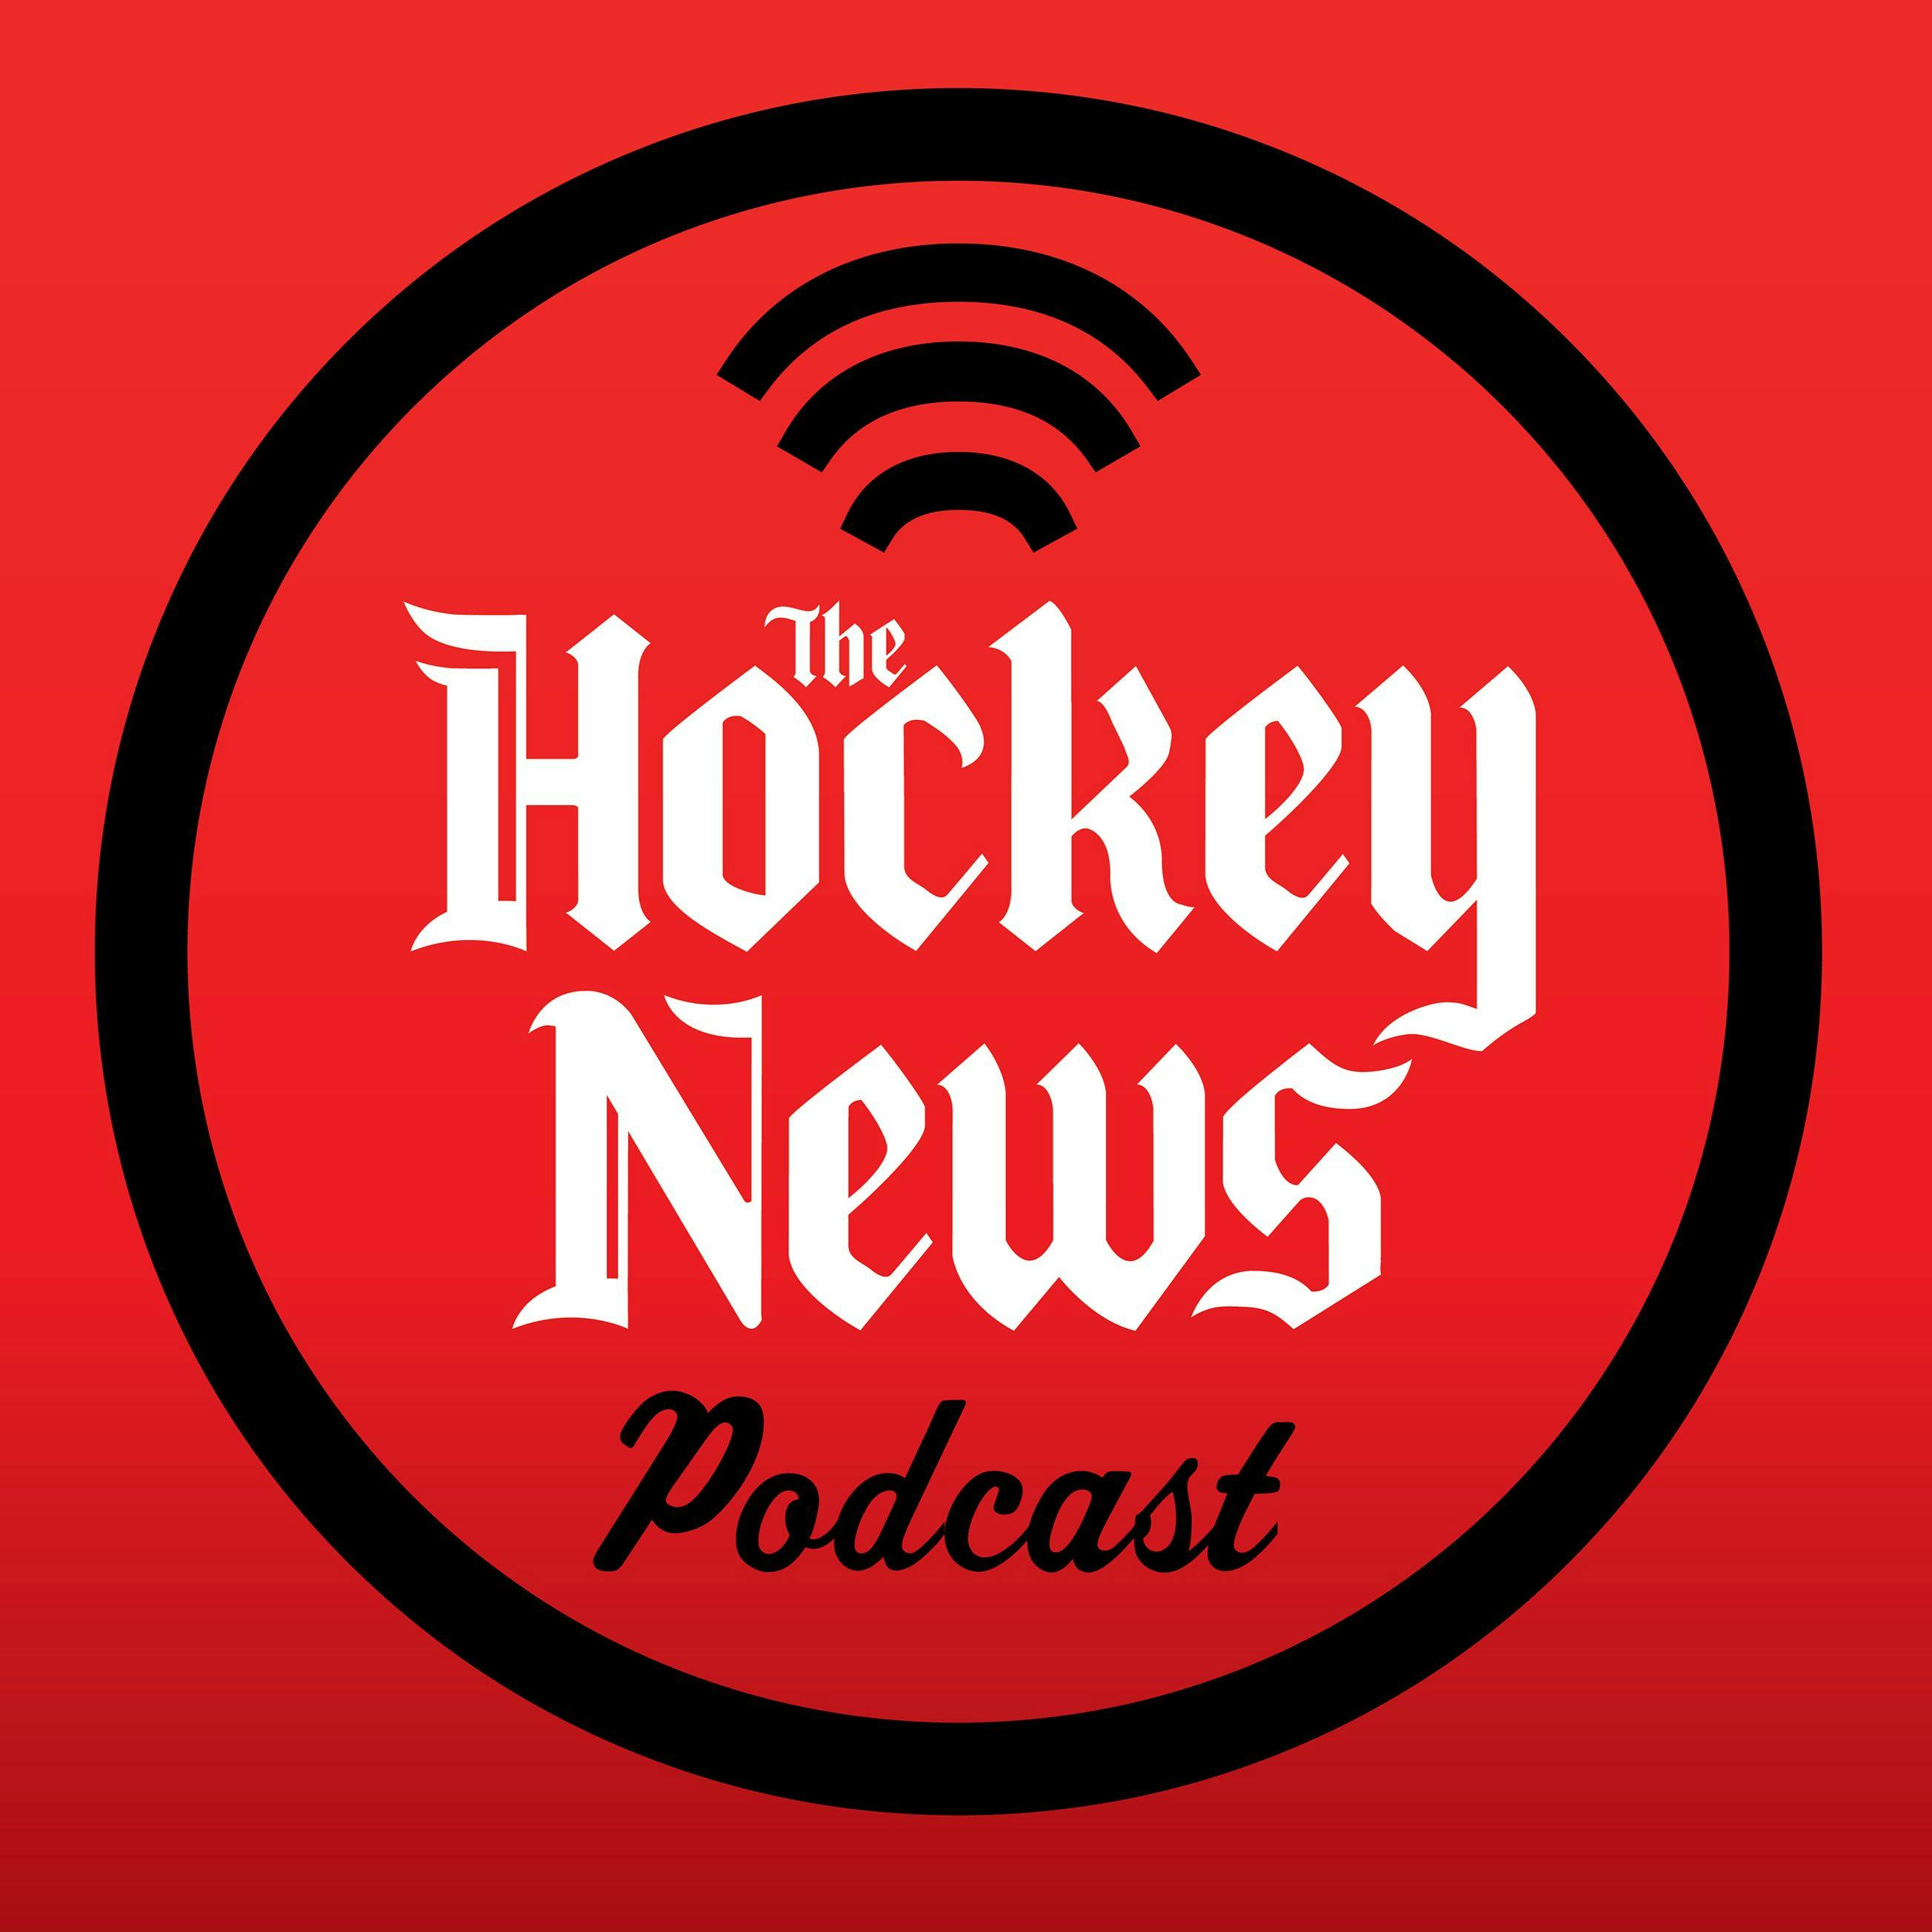 The Hockey News On The 'A' Podcast: Dan Bylsma on the AHL Firebirds